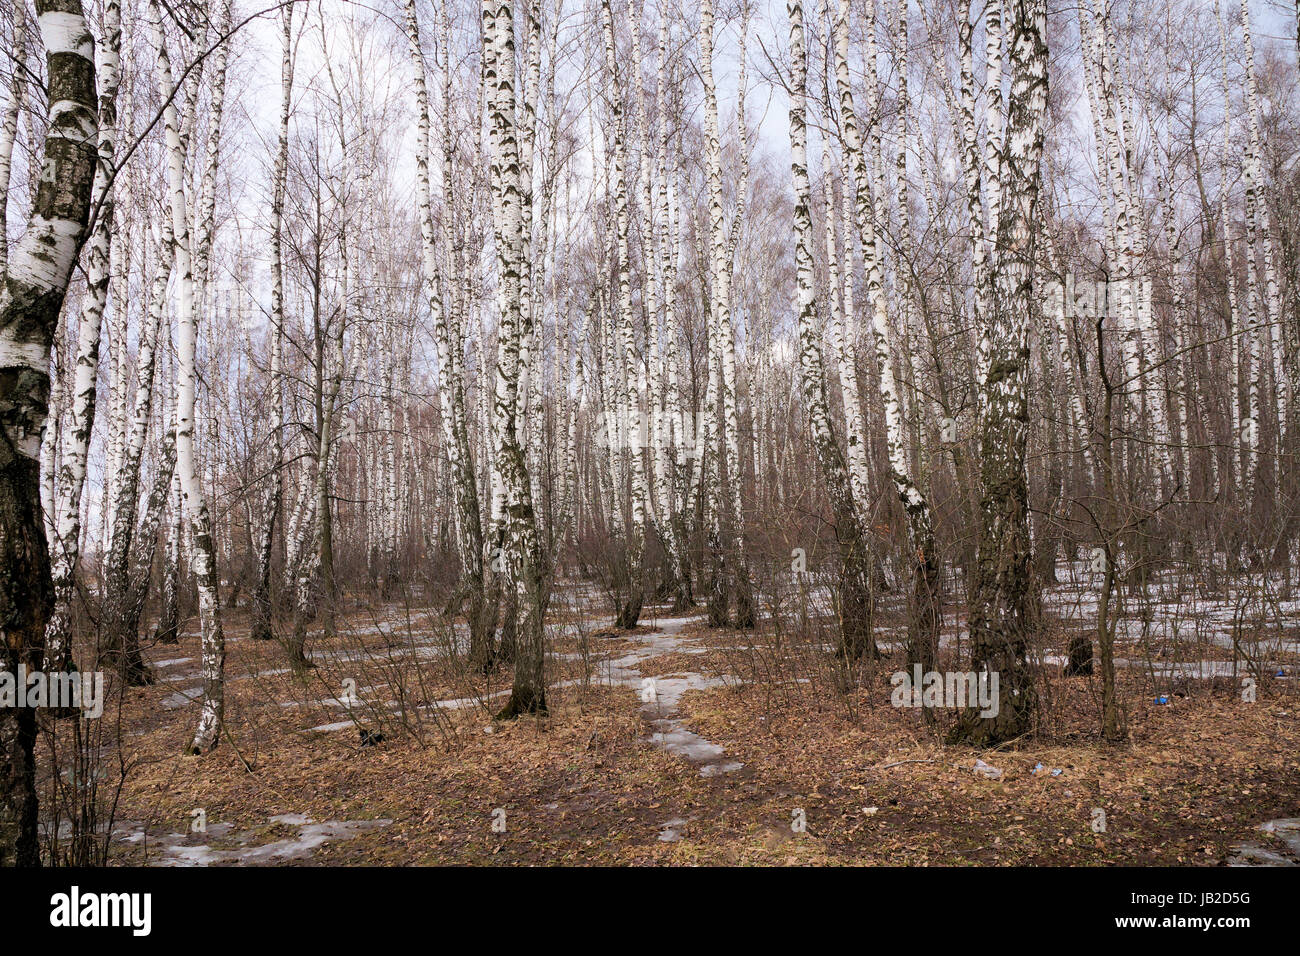 Foto-report 'Spring nella regione di Mosca". Studio 'Spring Podmoskovye." La neve non fusa completamente. Lo scorso anno l'erba è visibile. Le betulle senza Foto Stock